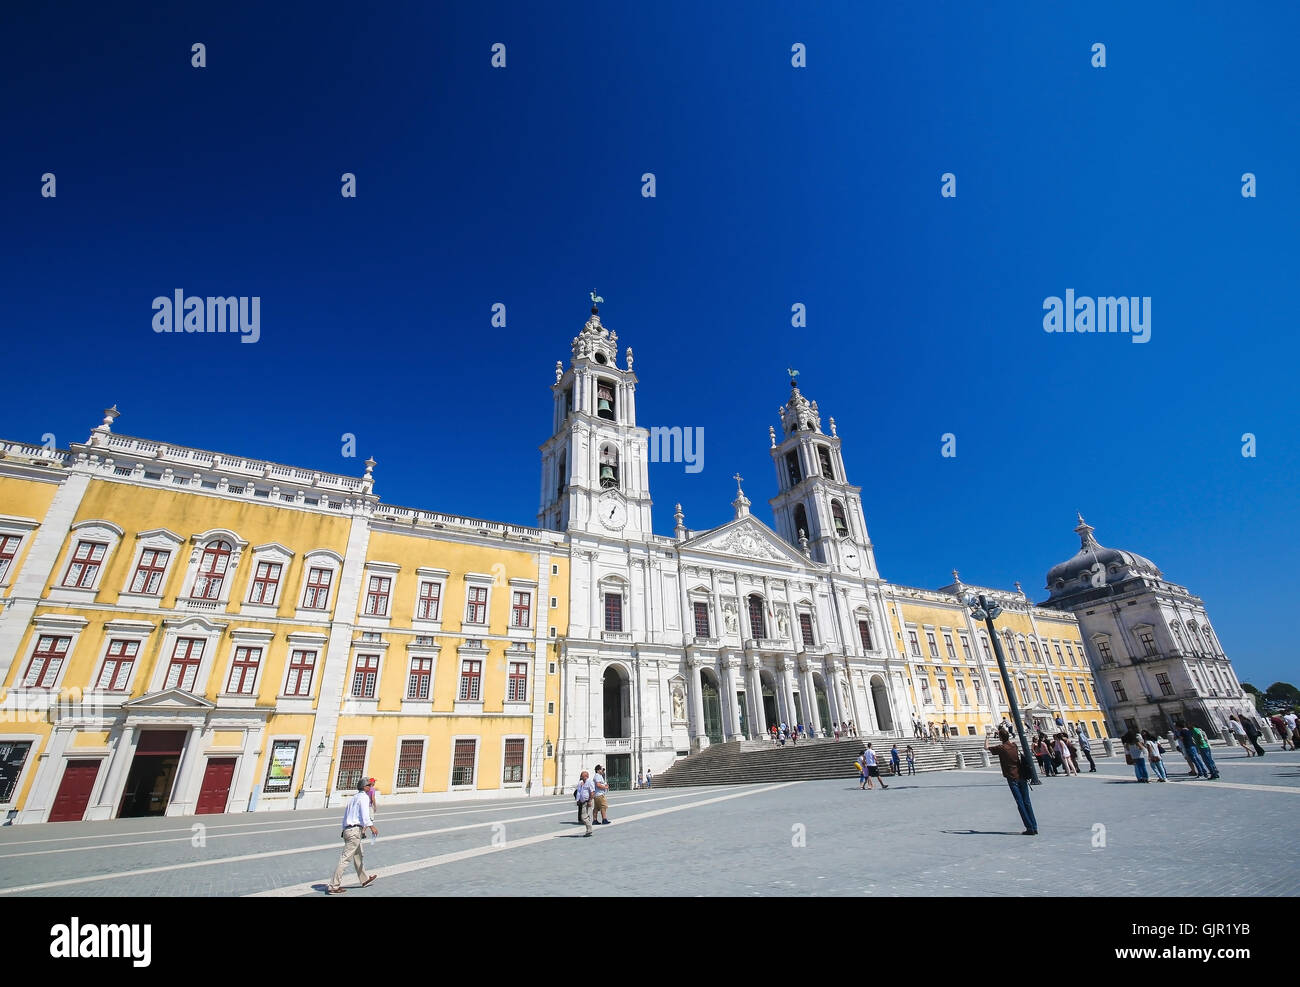 MAFRA, PORTUGAL - 17 juillet 2016 : Façade de la basilique au palais de Mafra, Portugal, un célèbre palais royal construit au 18t Banque D'Images